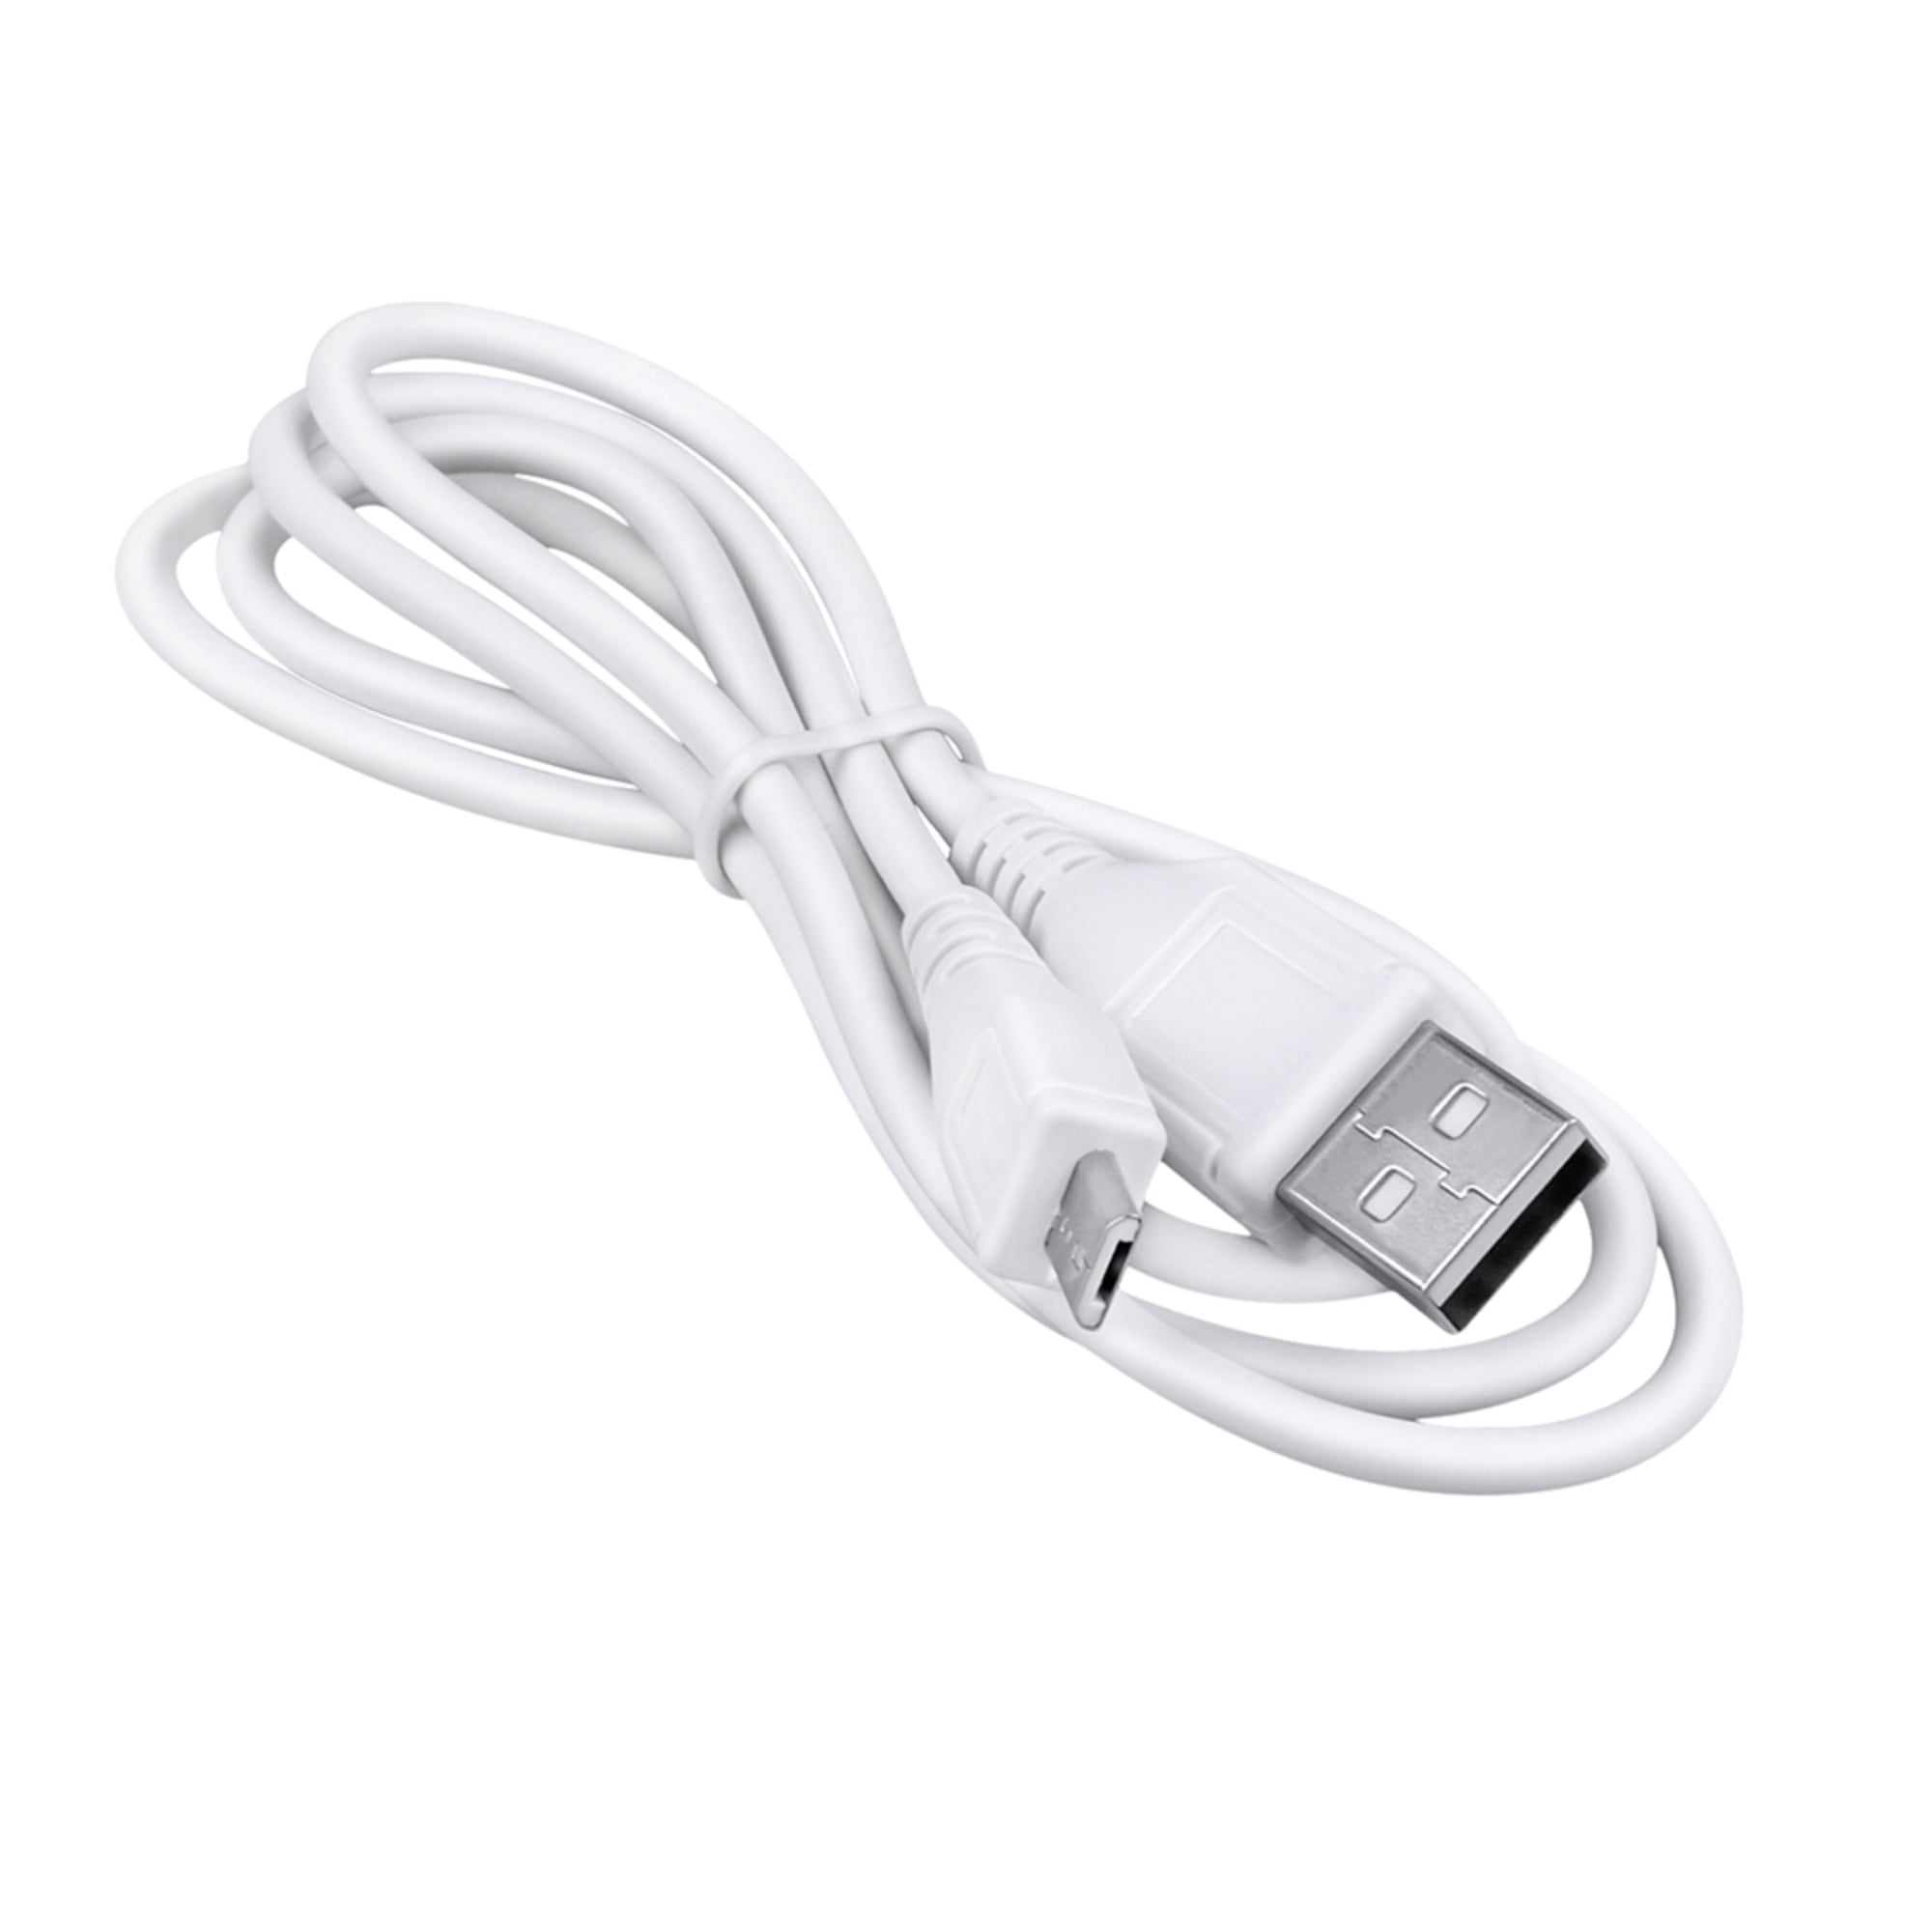 Câble USB de rechange pour chargeur de batterie Samsung Digmax  i70/i85/L70/L73